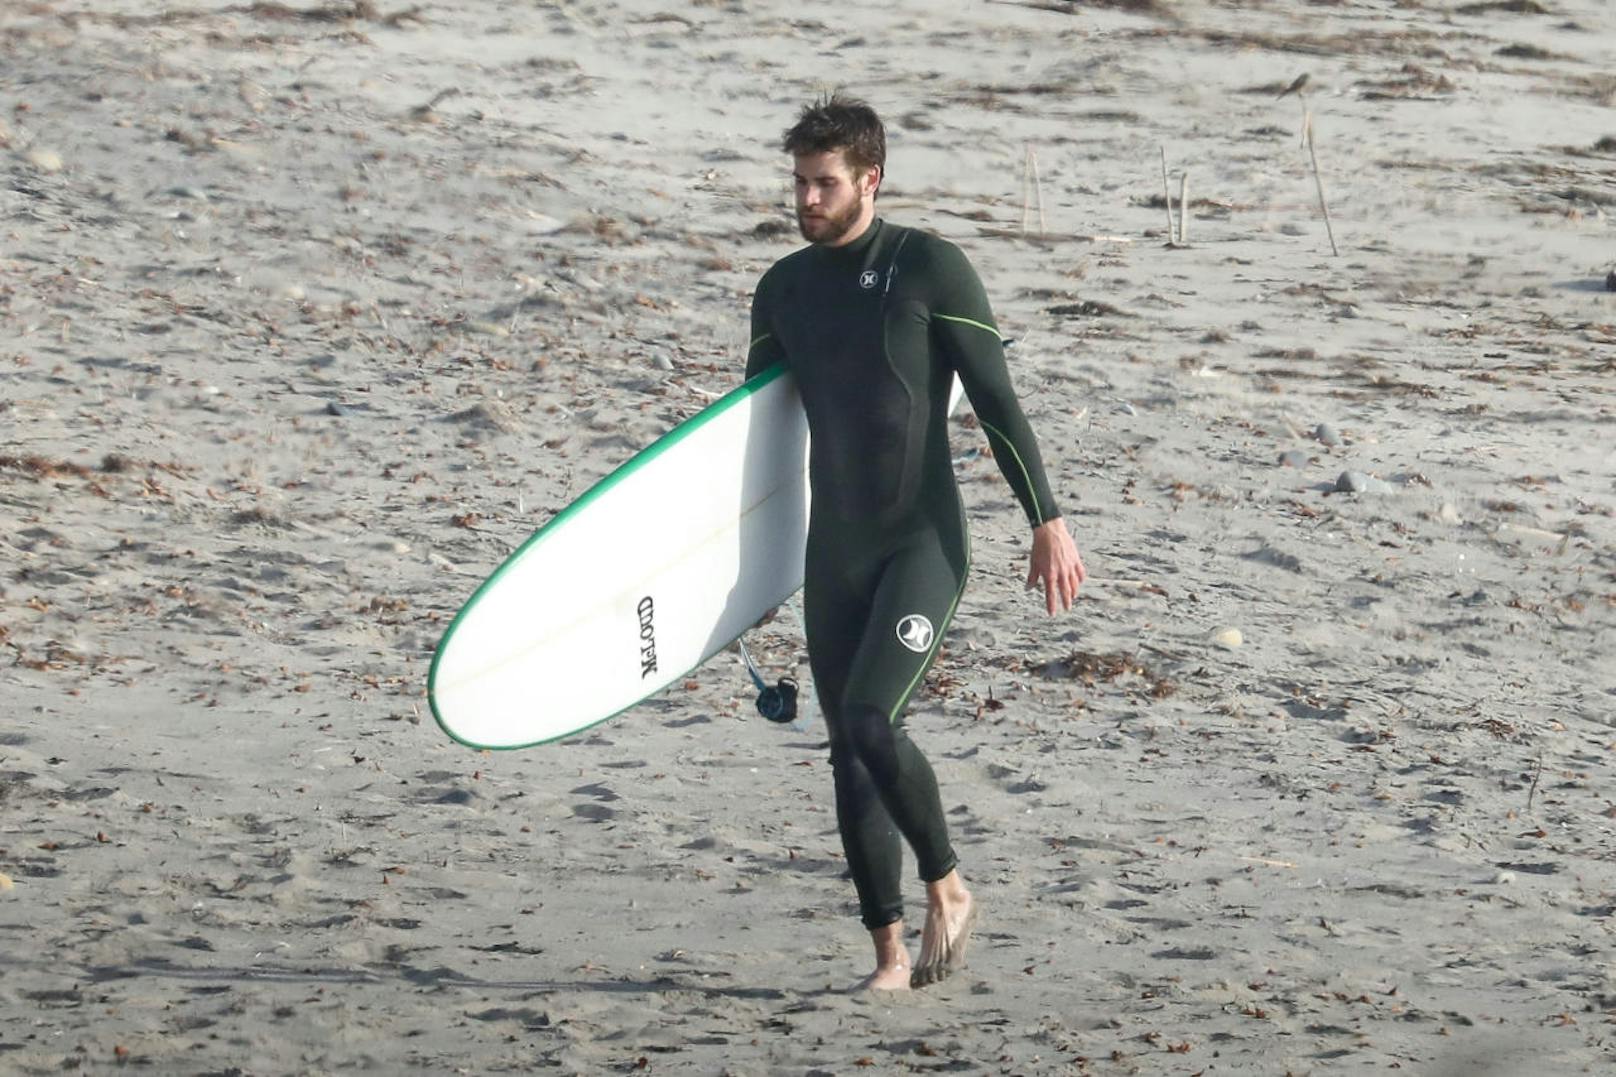 Ein Glücksfall für die Paparazzi, dass sich Liam für einen Tag am Strand statt einen Tag im Fitnesstudio entschieden hat